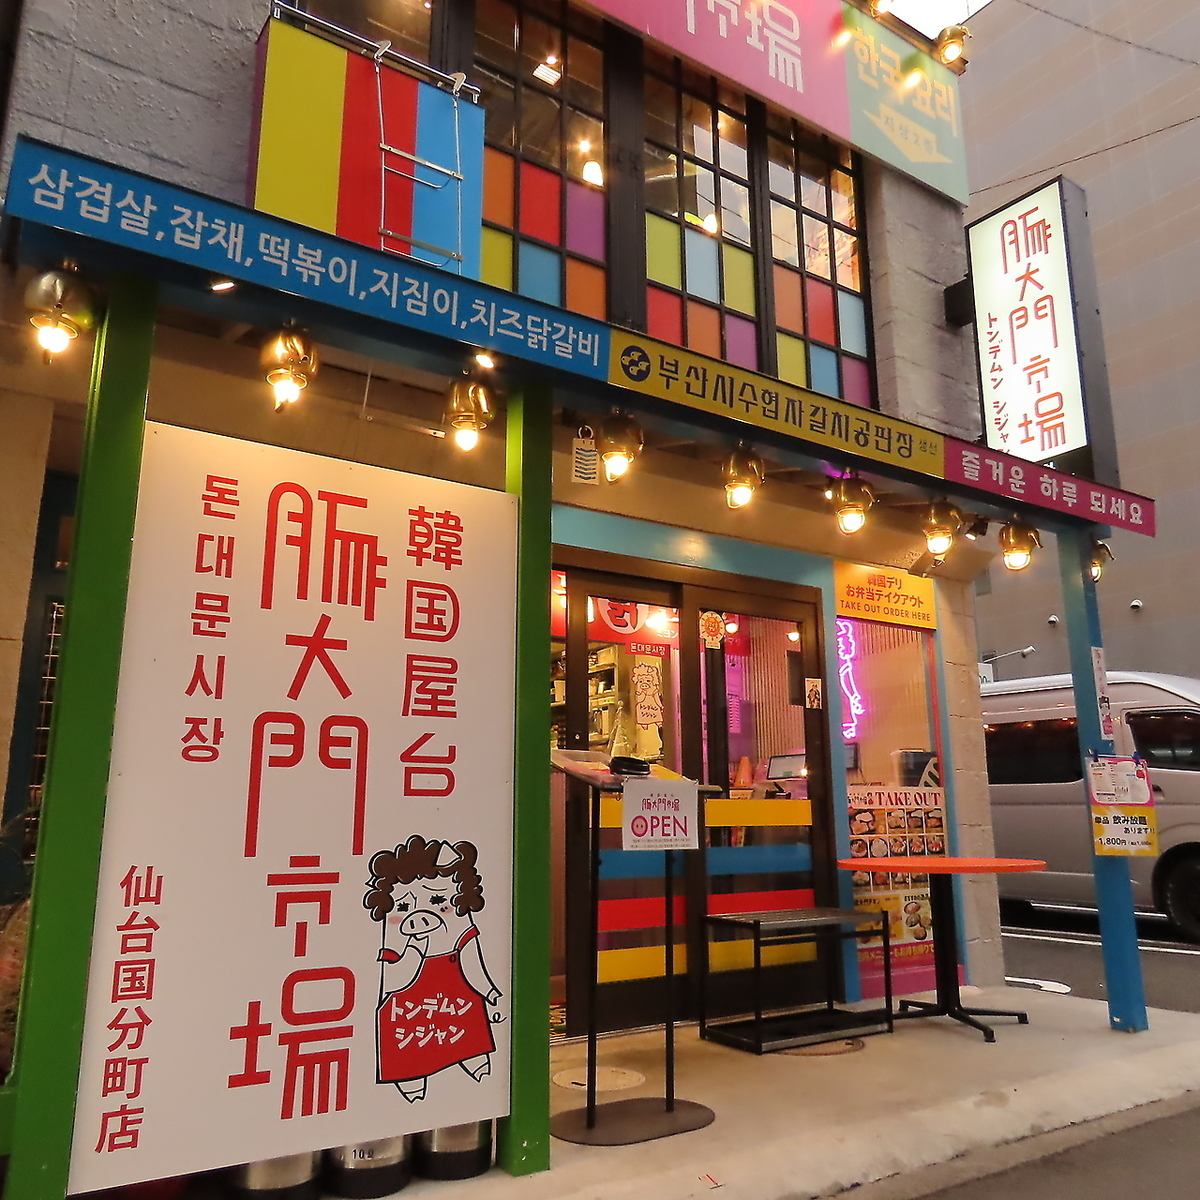 Bustling Korean food stall "Pigdaemun Market" ★Samgyeopsal is very popular!!